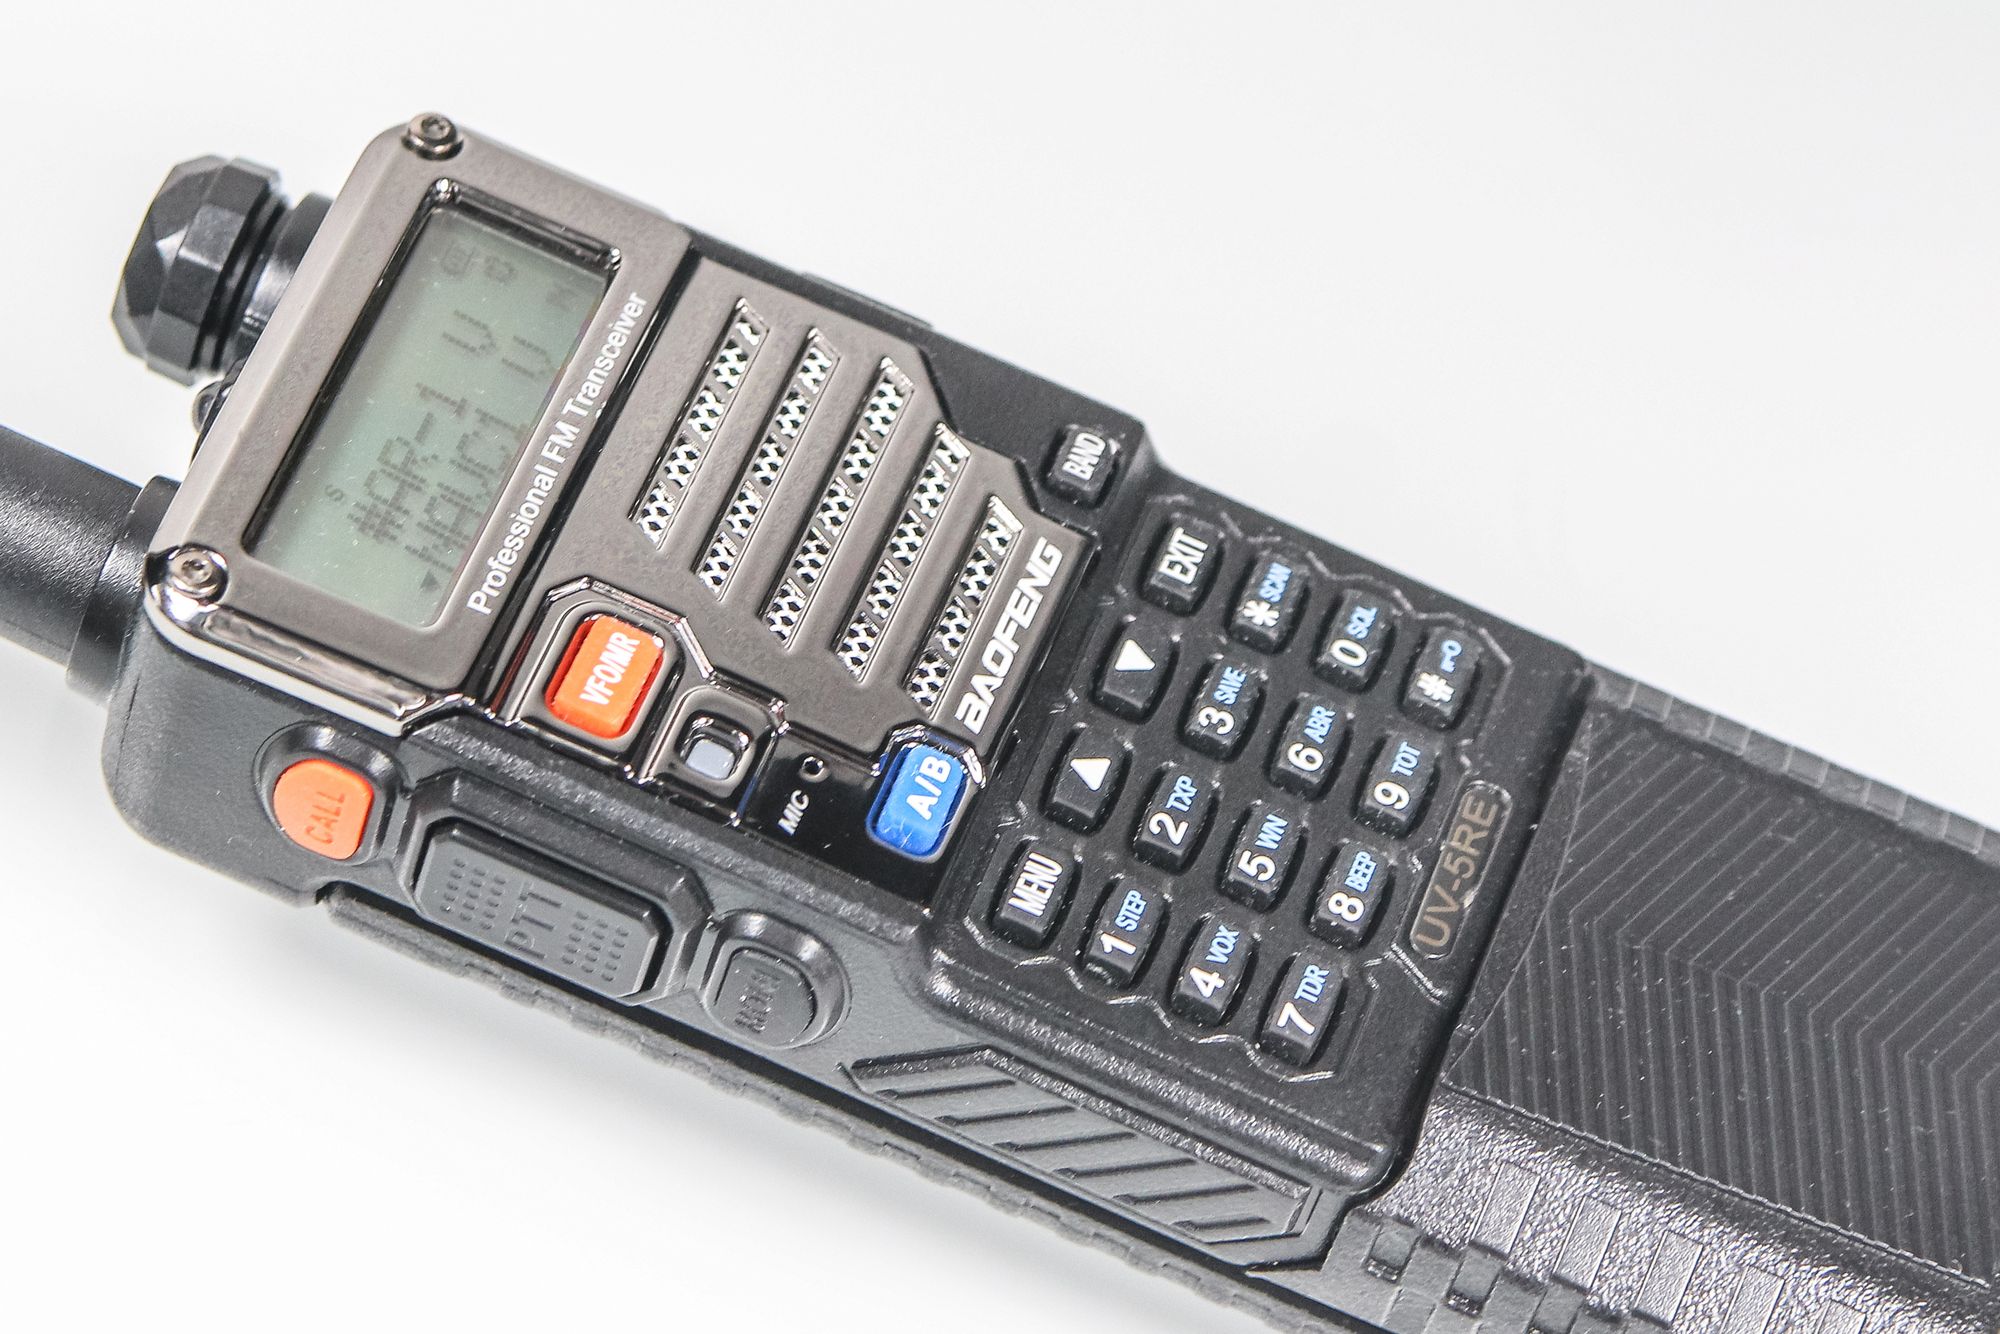 Baofeng UV-5R - sprawny i funkcjonalny radiotelefon w atrakcyjnej cenie